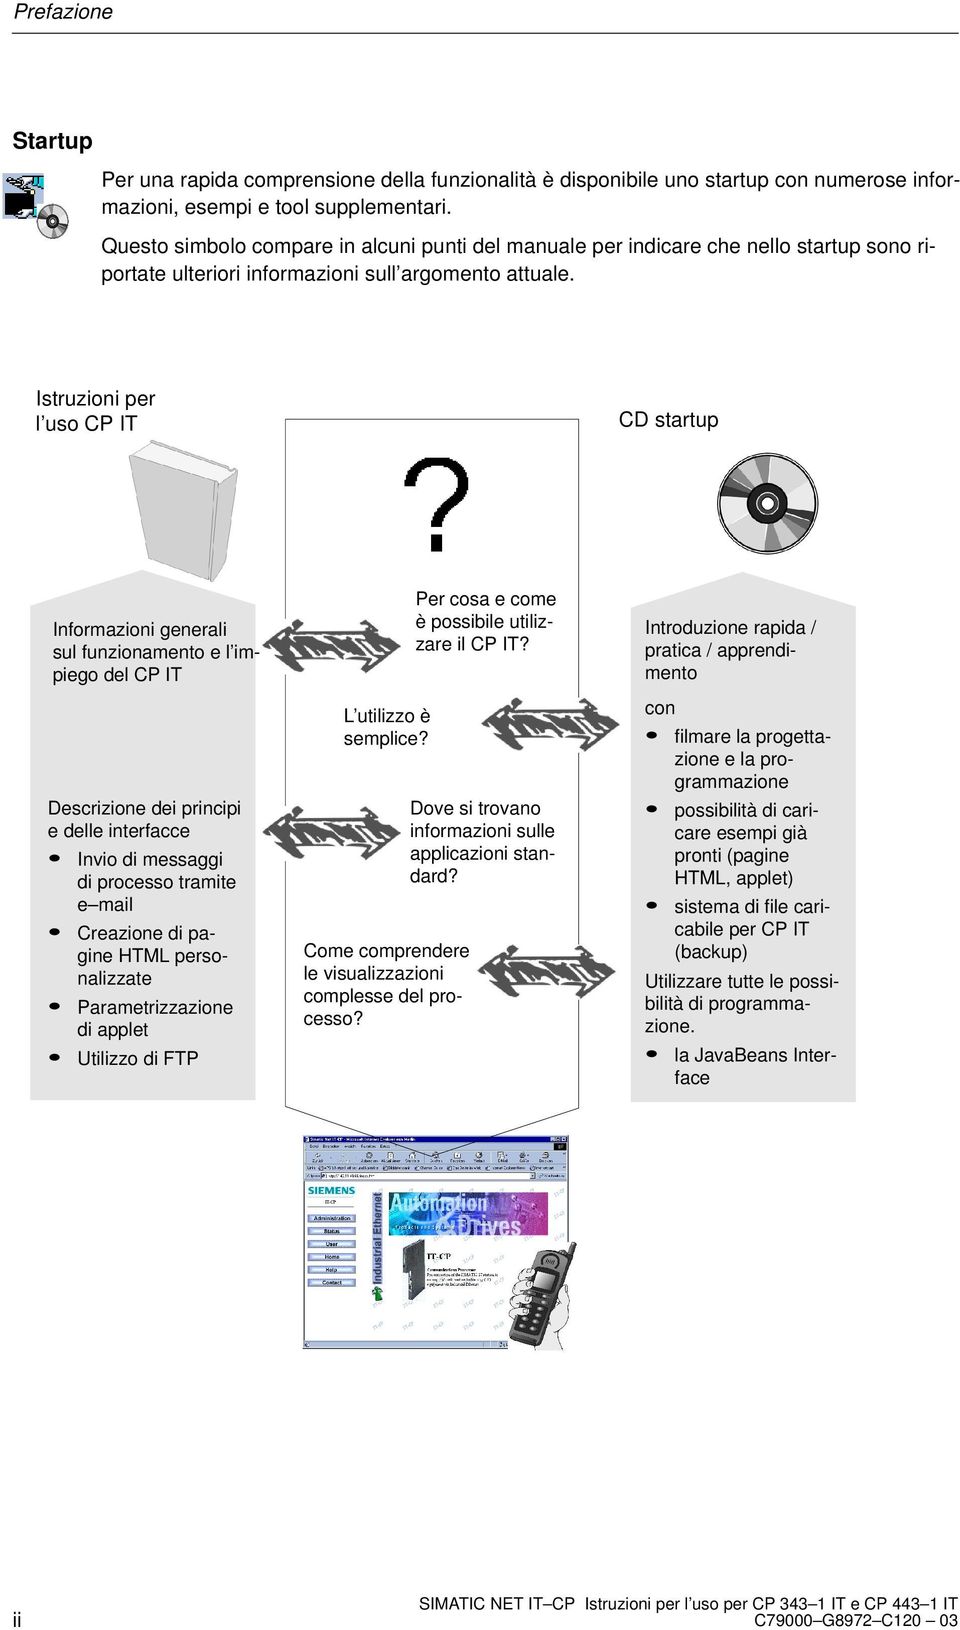 Istruzioni per l uso CP IT CD startup Informazioni generali sul funzionamento e l impiego del CP IT Descrizione dei principi e delle interfacce Invio di messaggi di processo tramite e mail Creazione